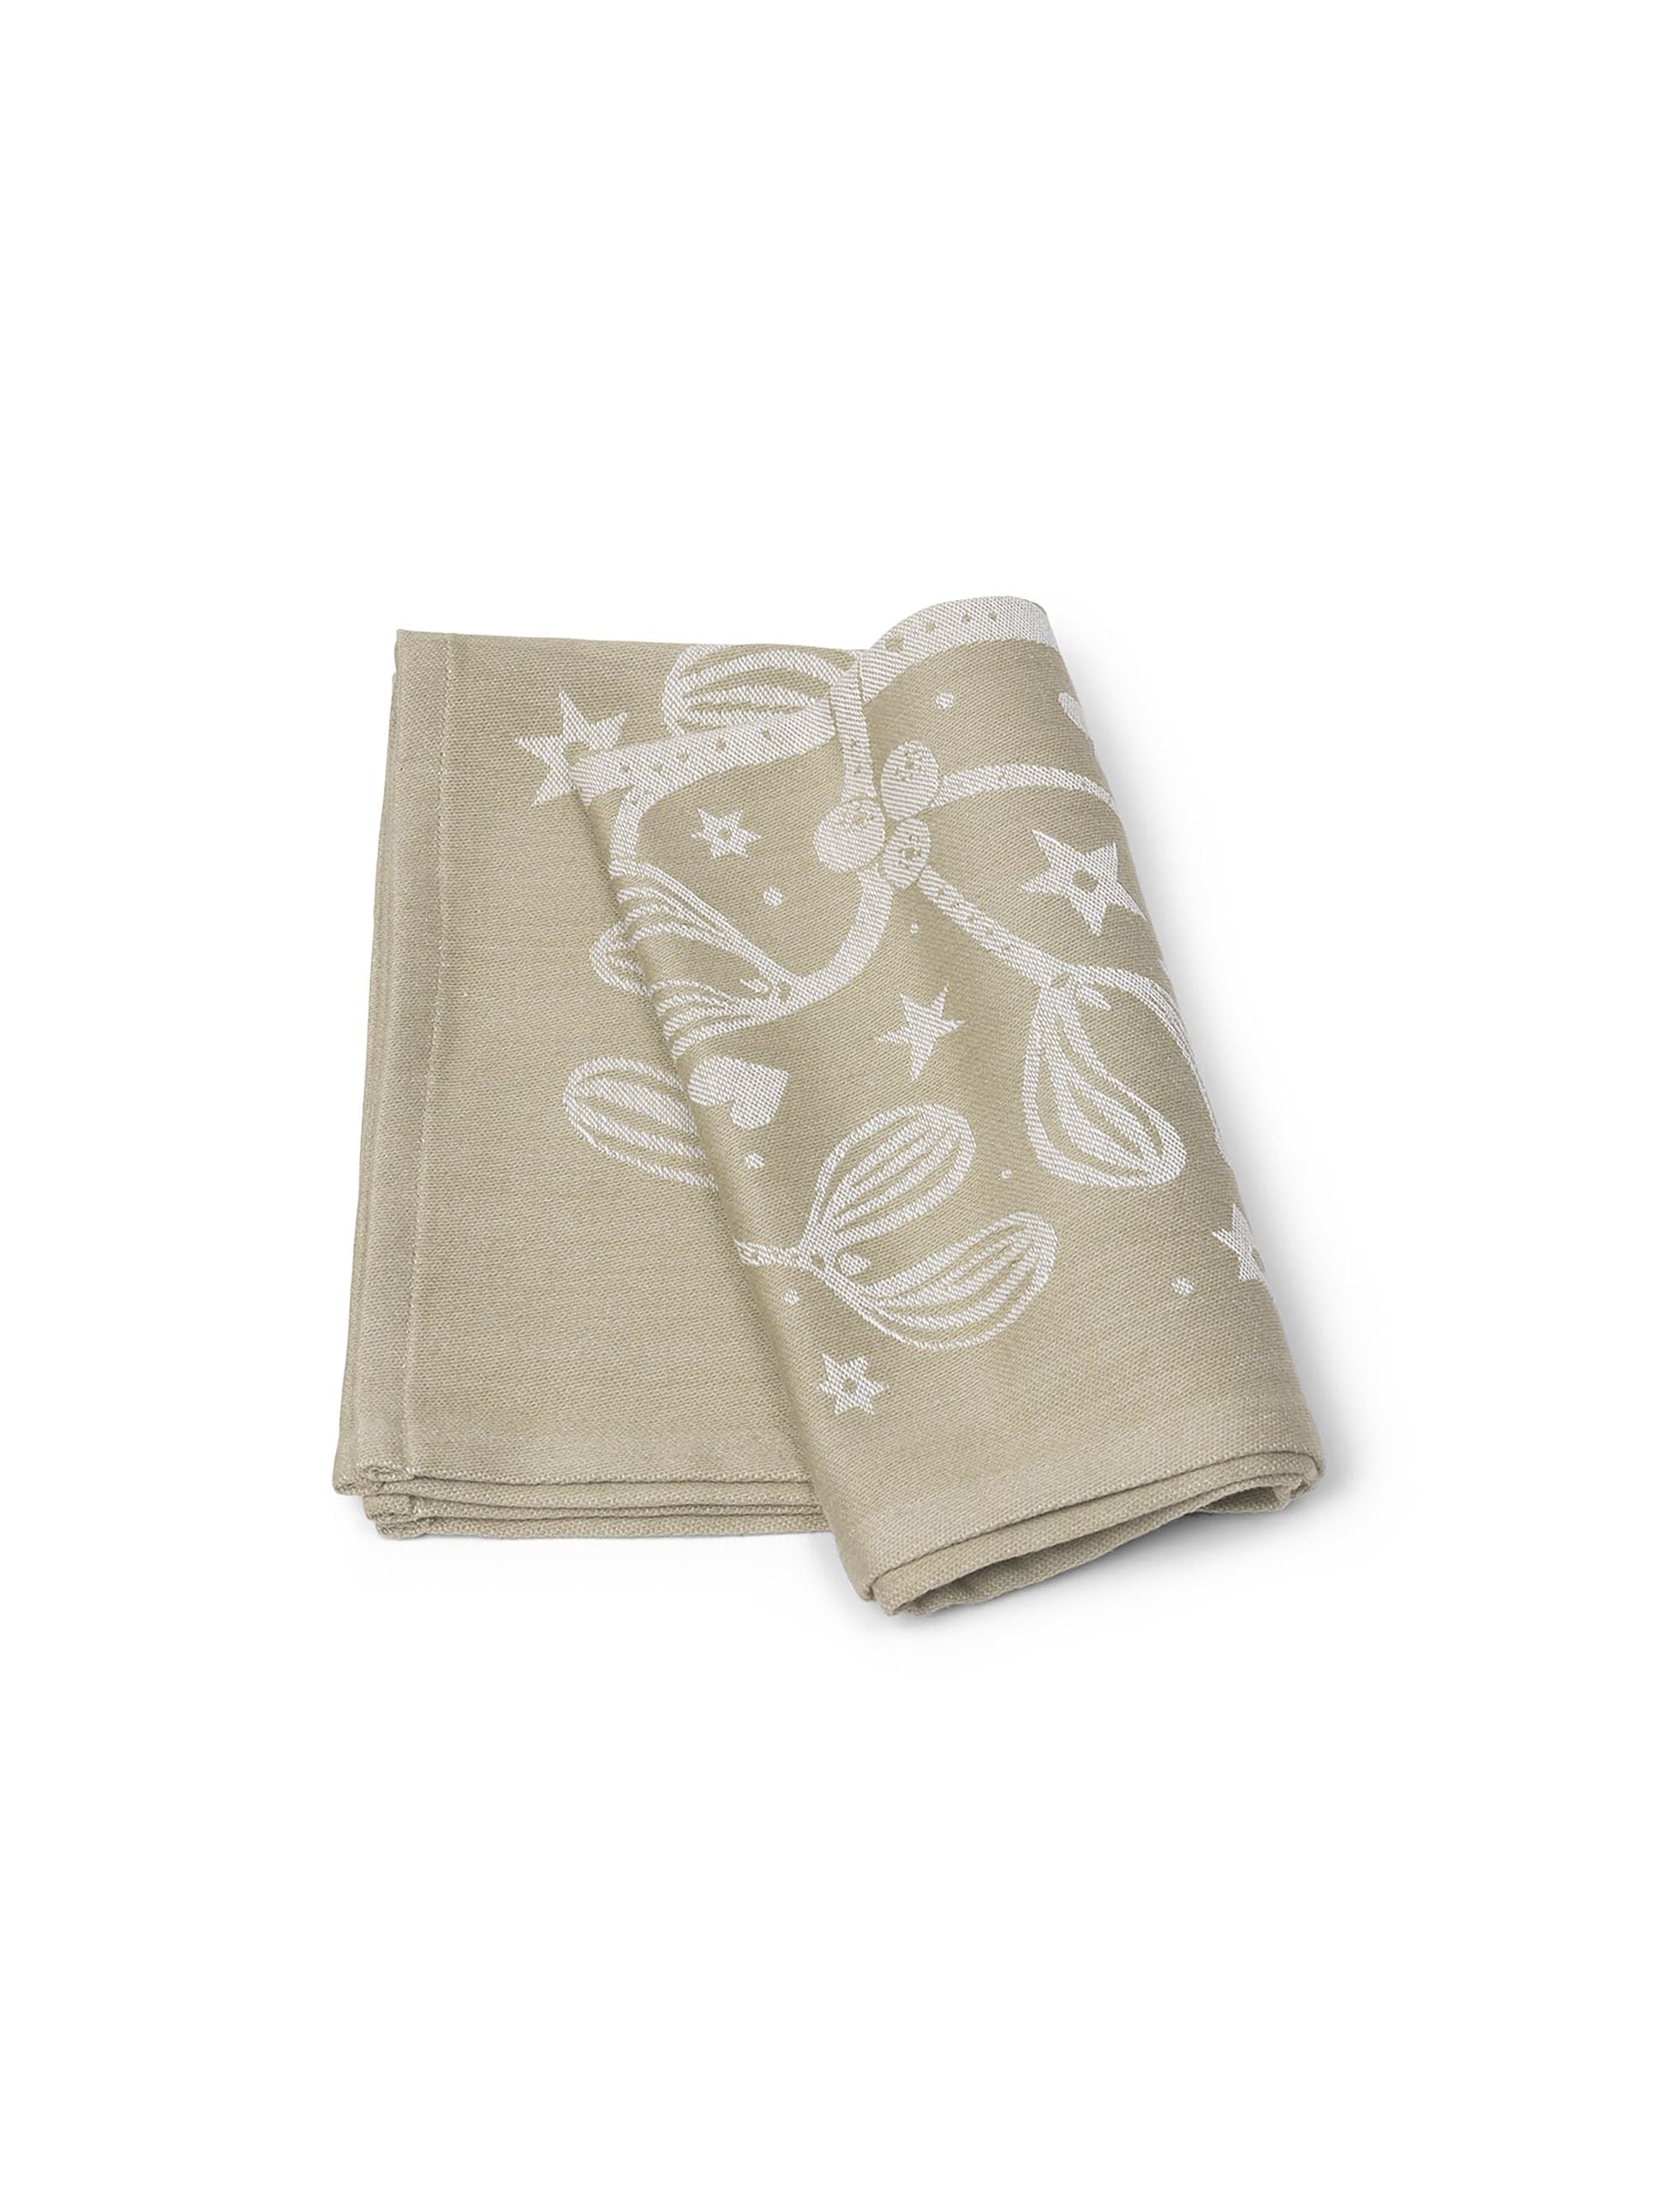 Ferm Living Mistletoe Tea Towel, Sand